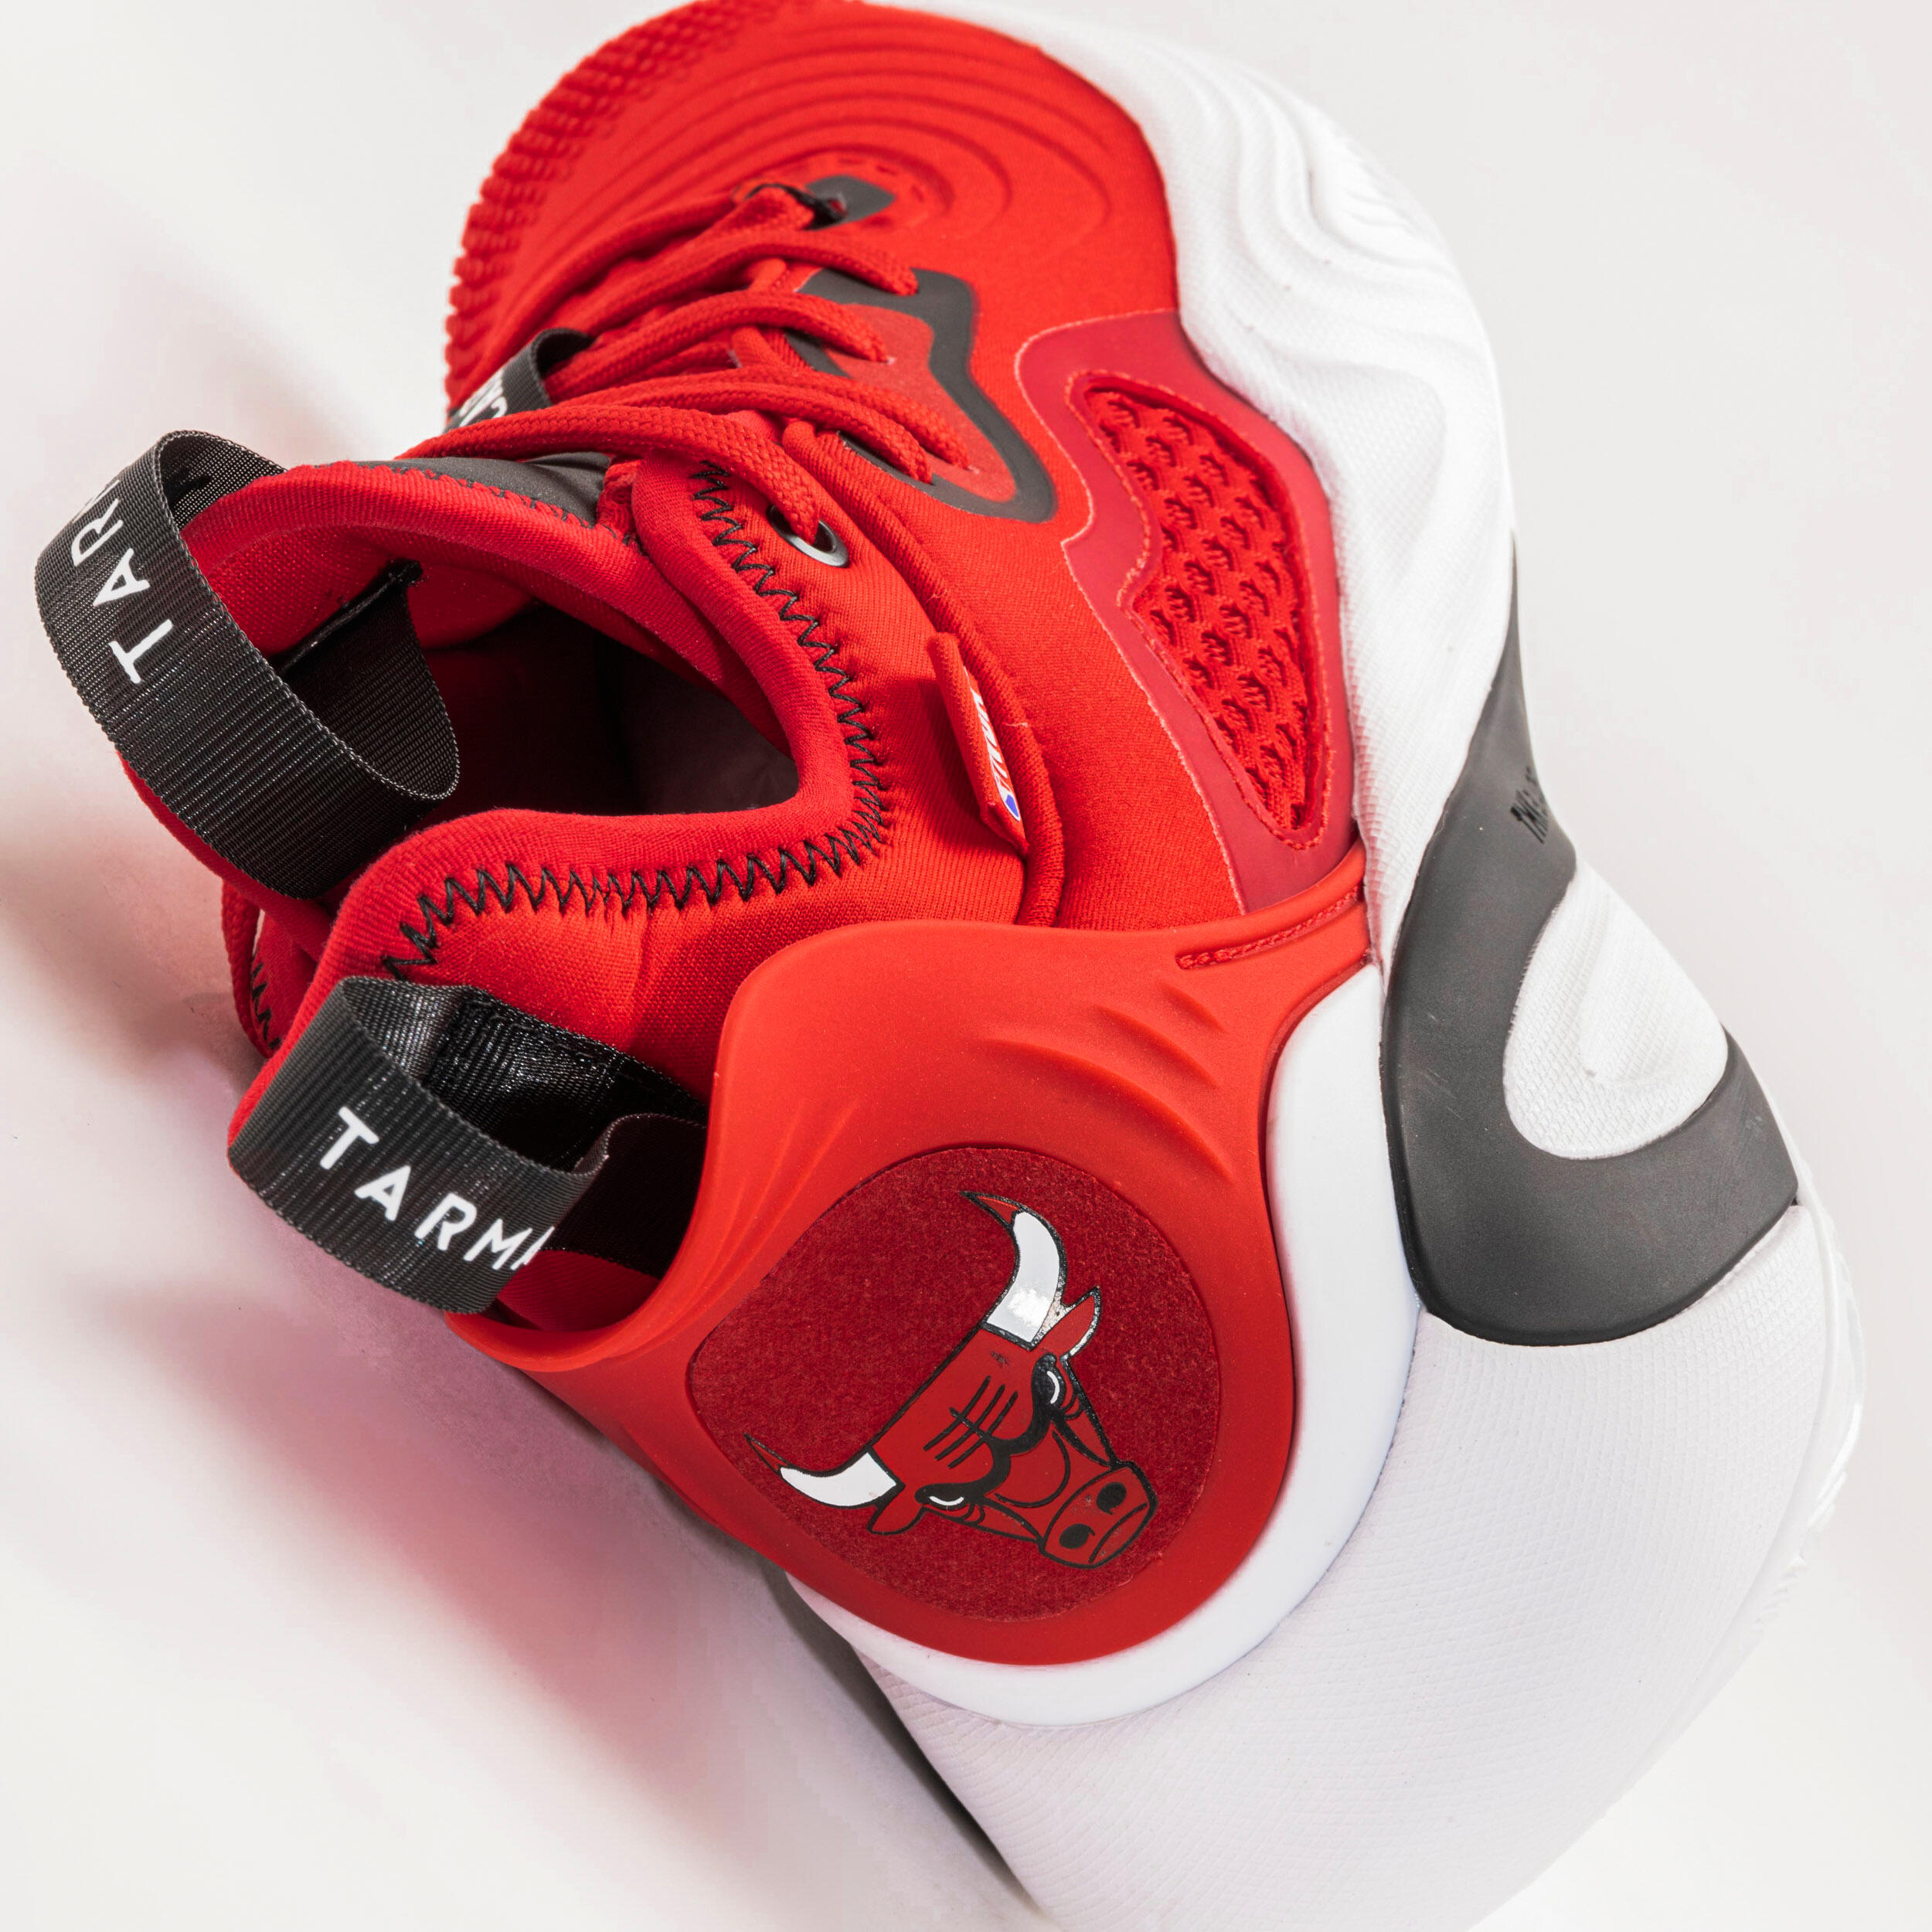 Men's/Women's Basketball Shoes SE900 - Red/NBA Chicago Bulls 5/10